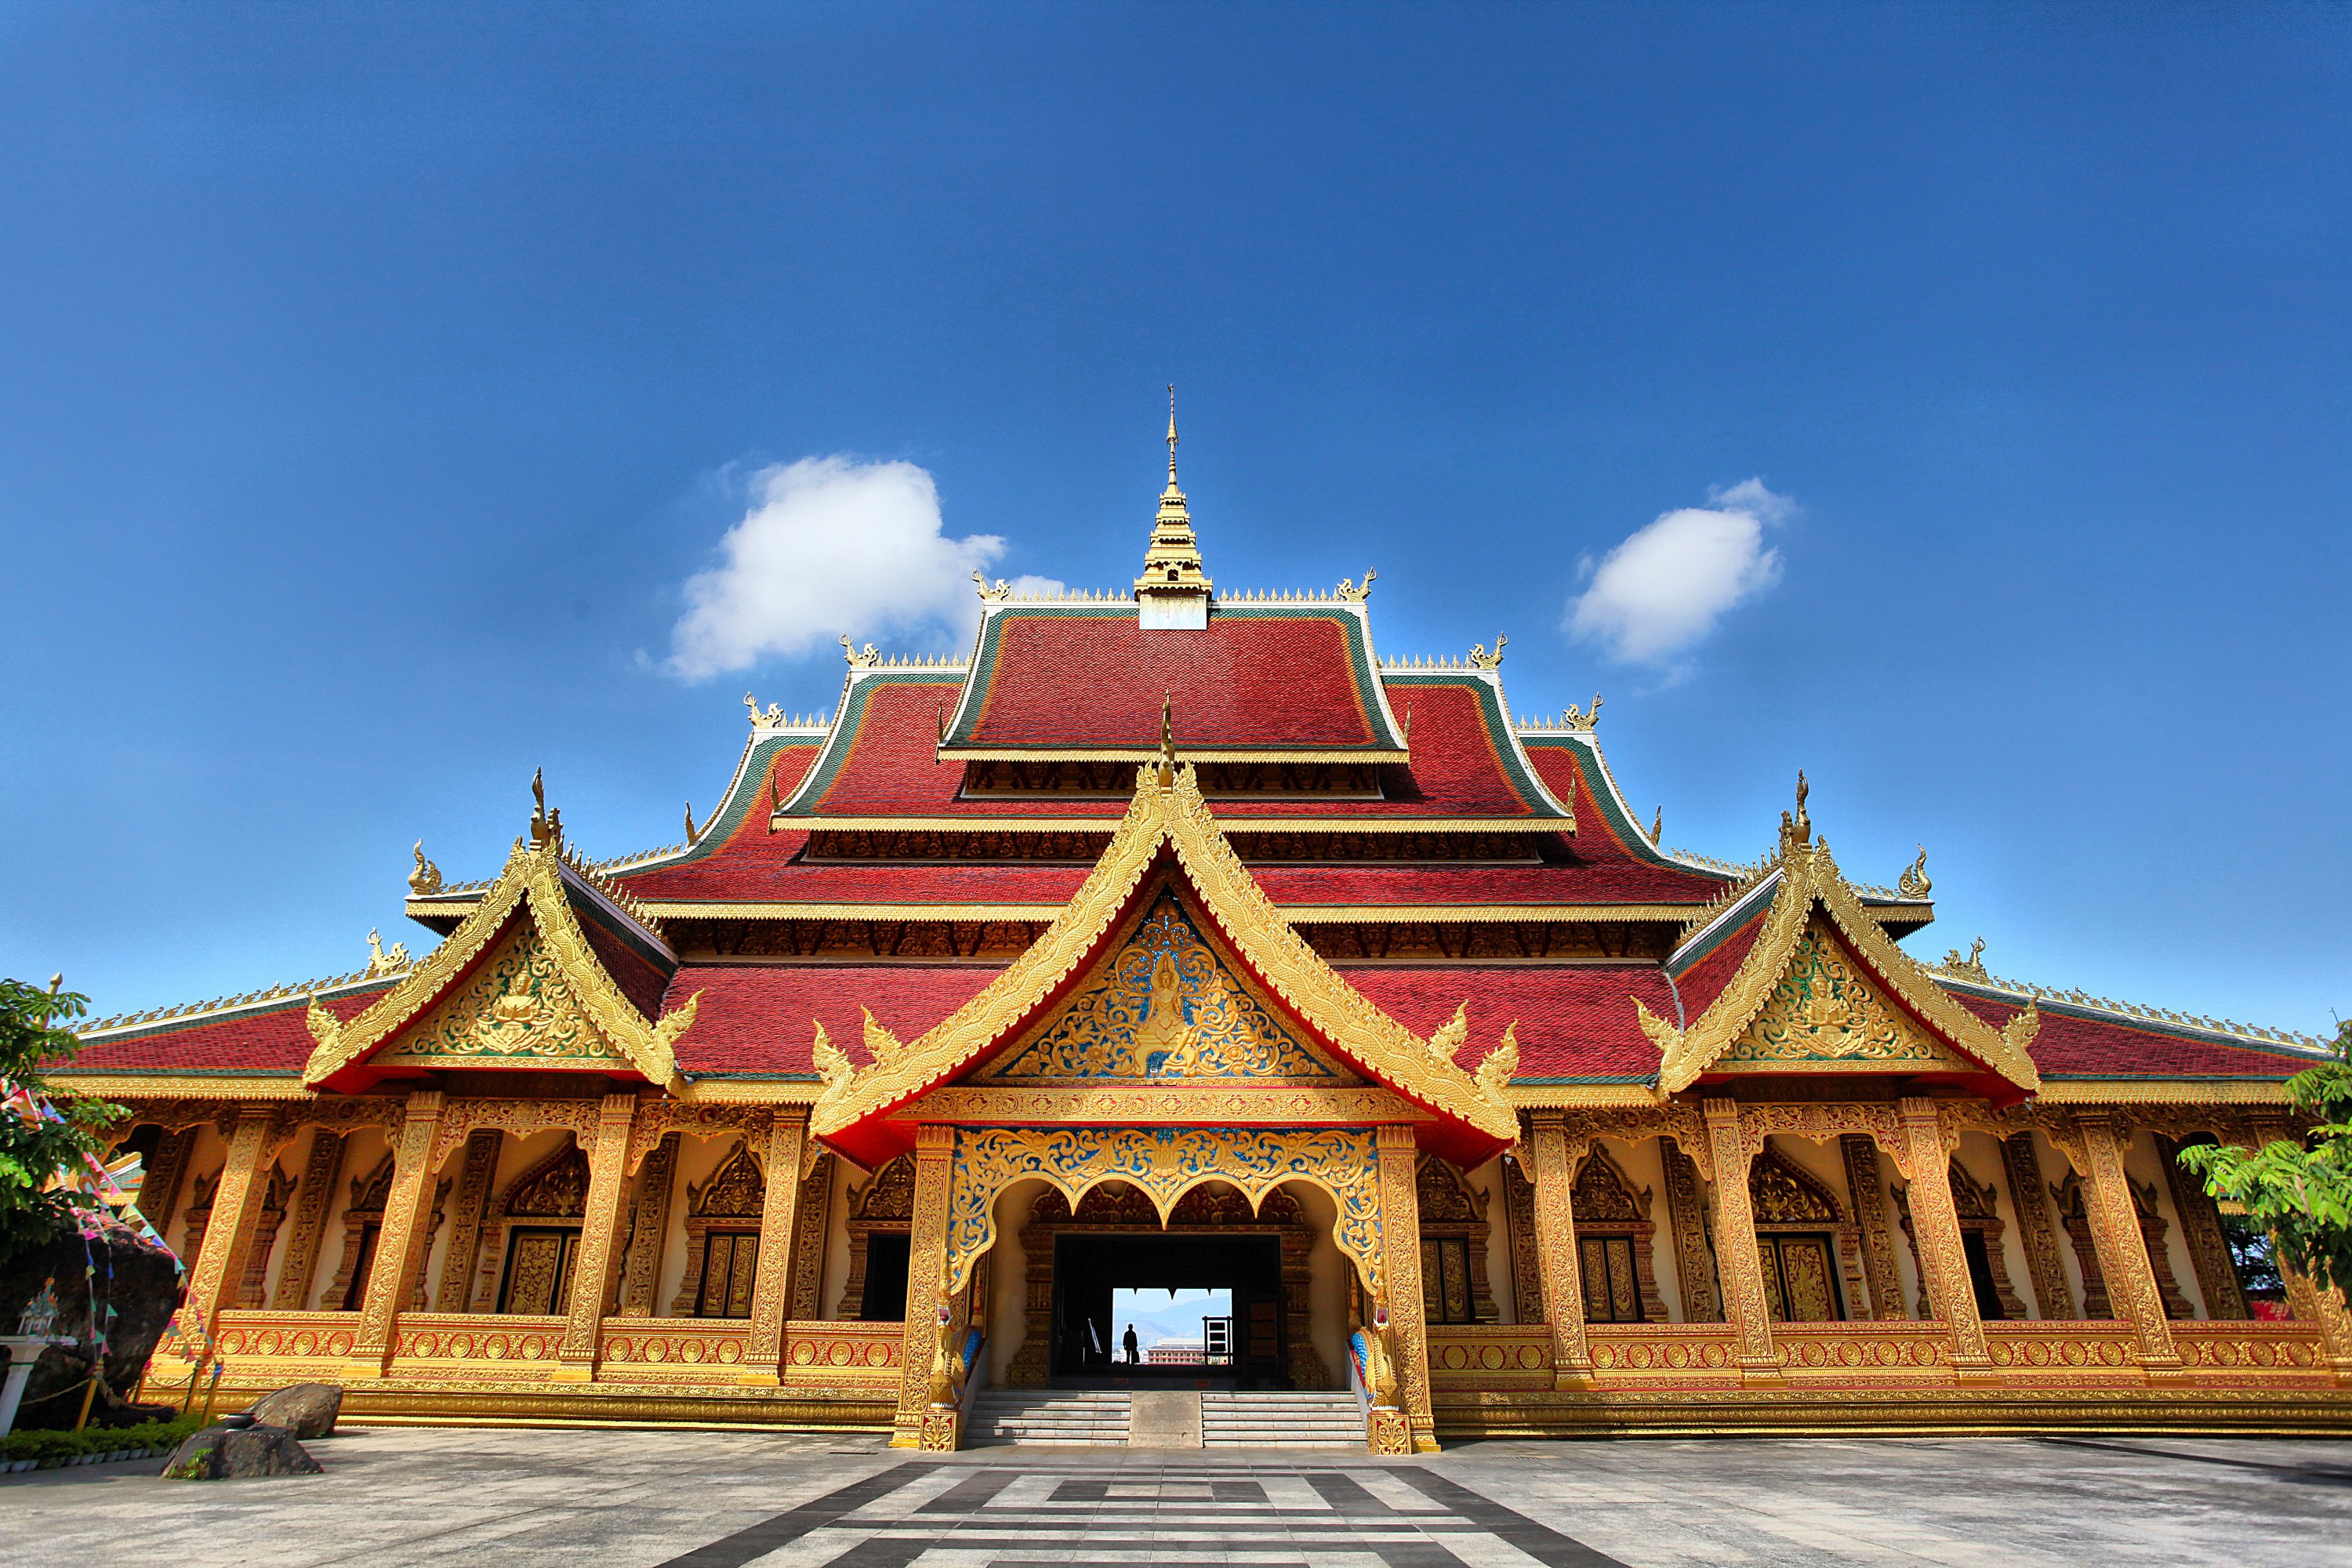 勐泐大佛寺:在古代傣王朝的皇家寺院景飘佛寺的原址上恢复重建的